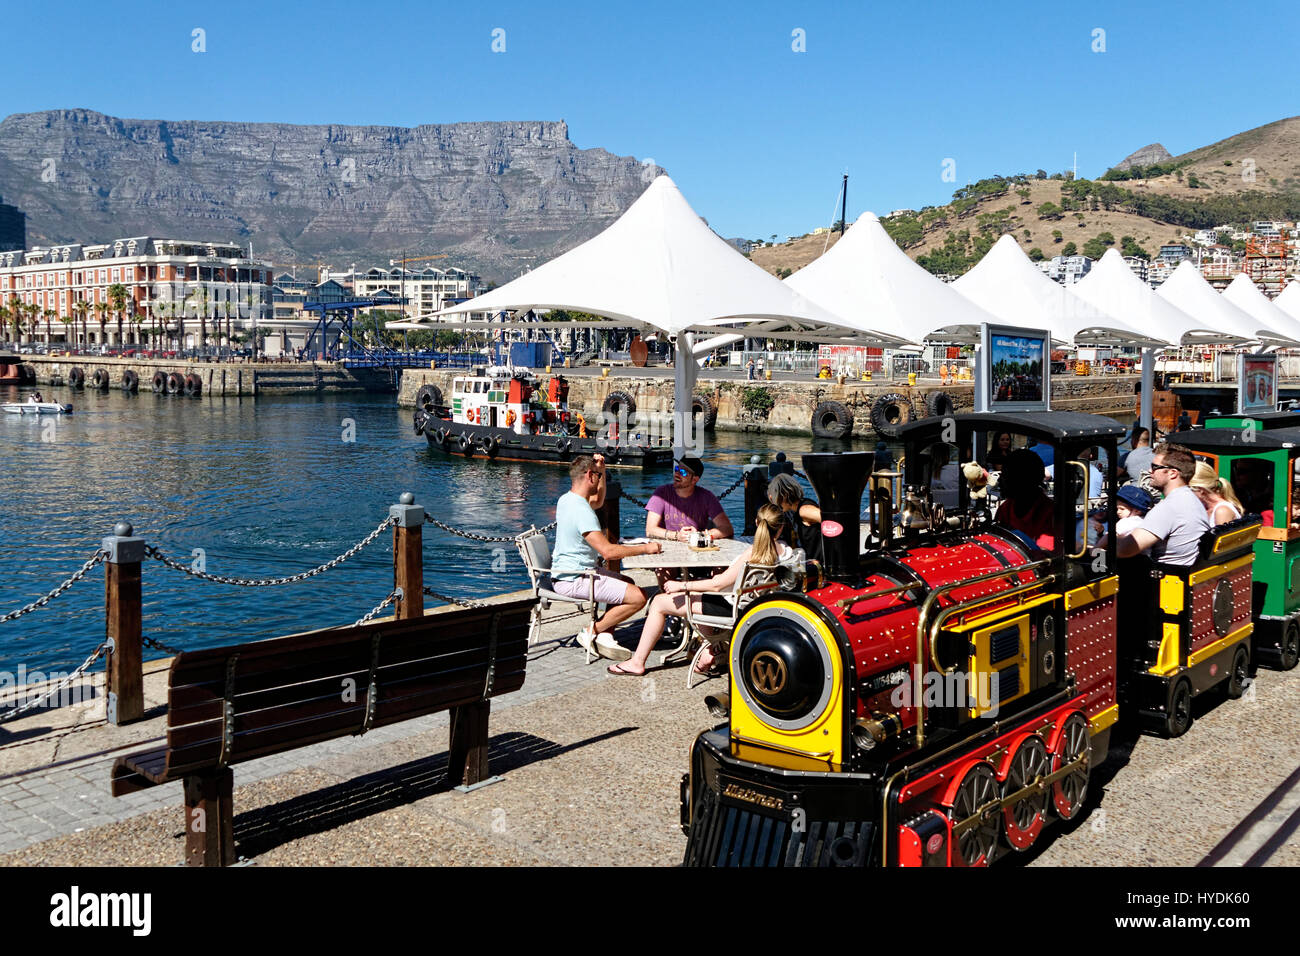 Bord de mer avec le train touristique et Table Mountain, Cape Town, Western Cape, Afrique du Sud Banque D'Images